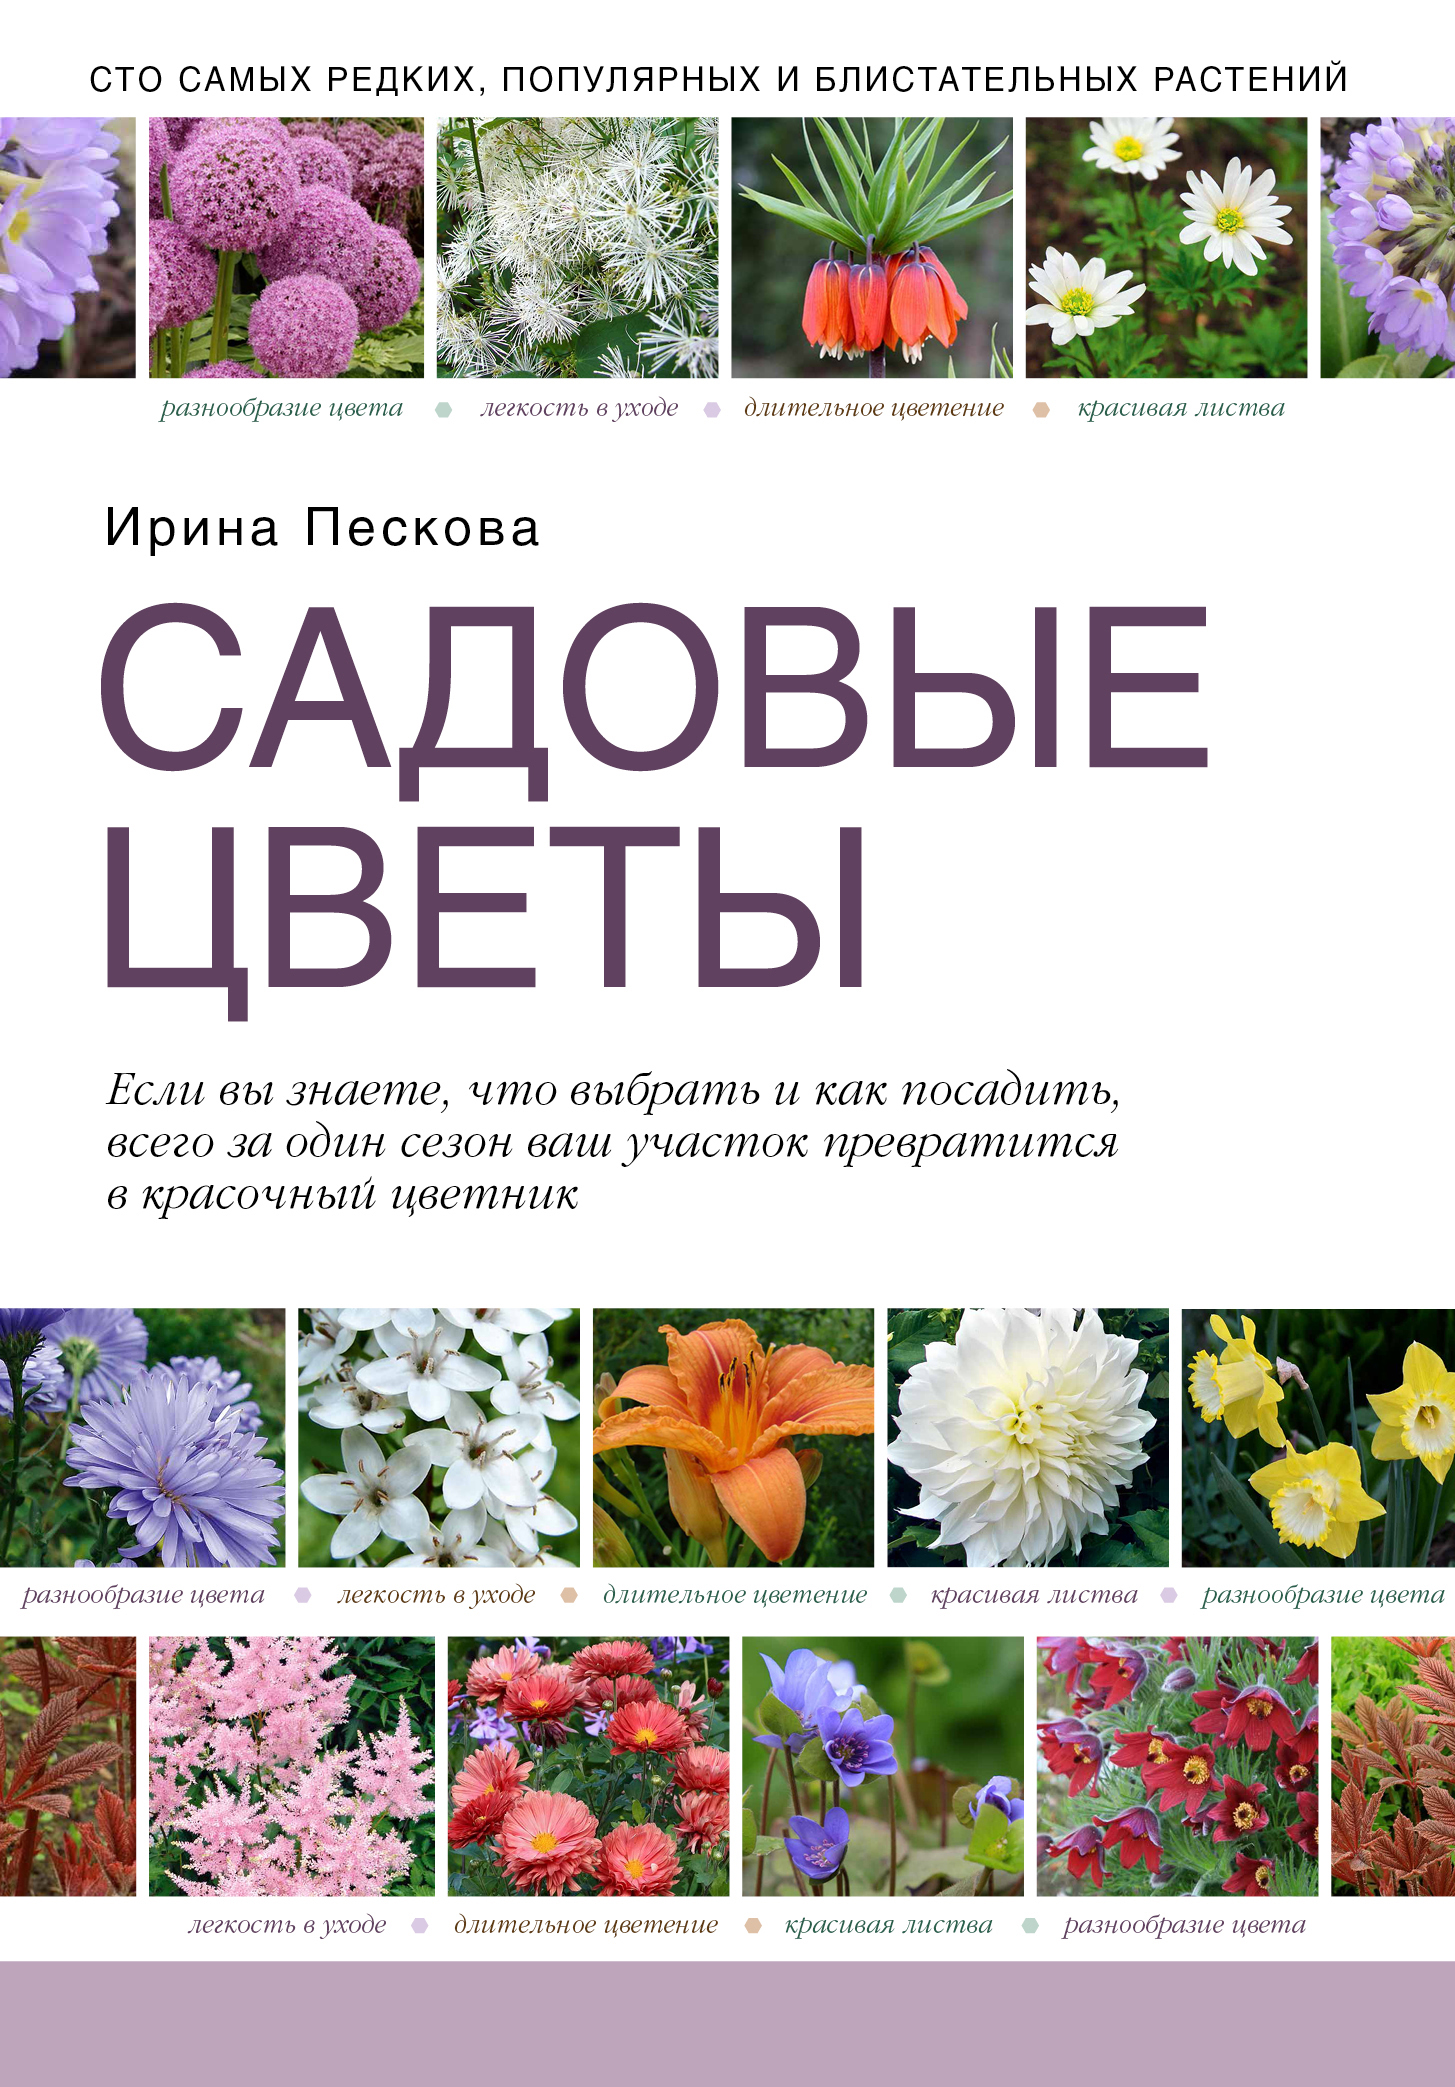 каталог садовых растений с фото